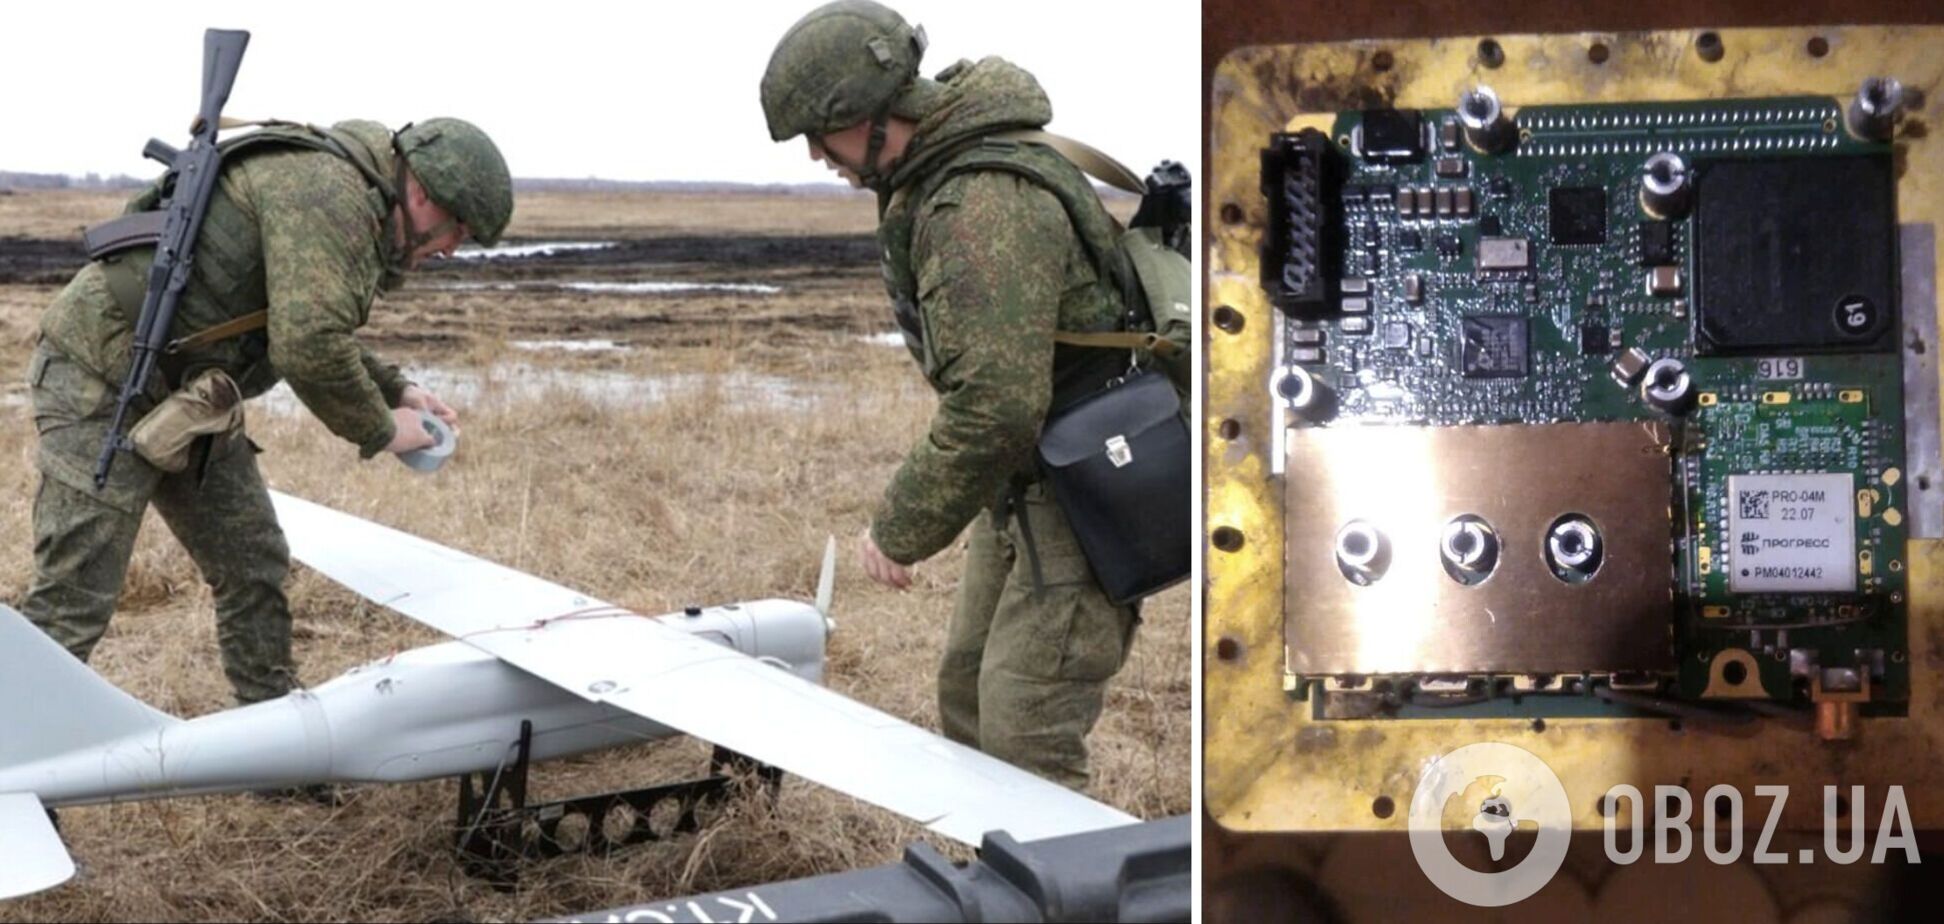 Россия продолжает доставать в странах НАТО электронику для вооружения своих дронов: Бутусов показал фото и раскрыл детали